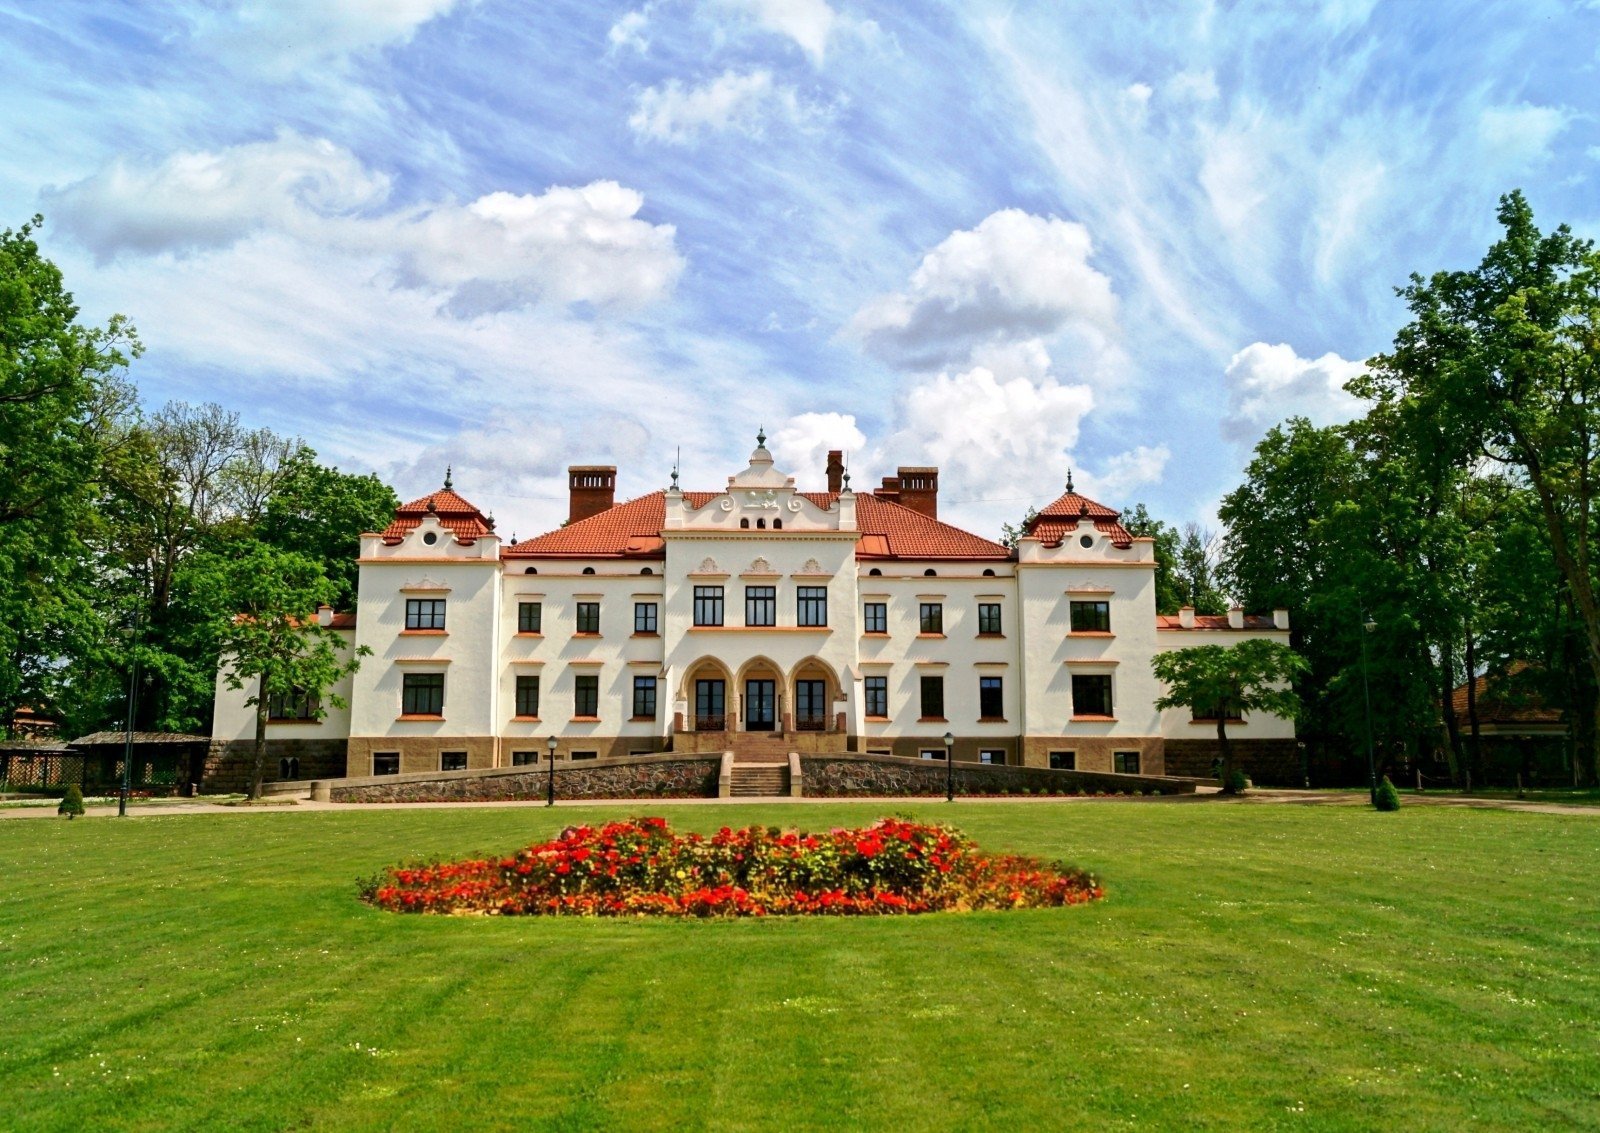 Photo: Rokiškis manor museum